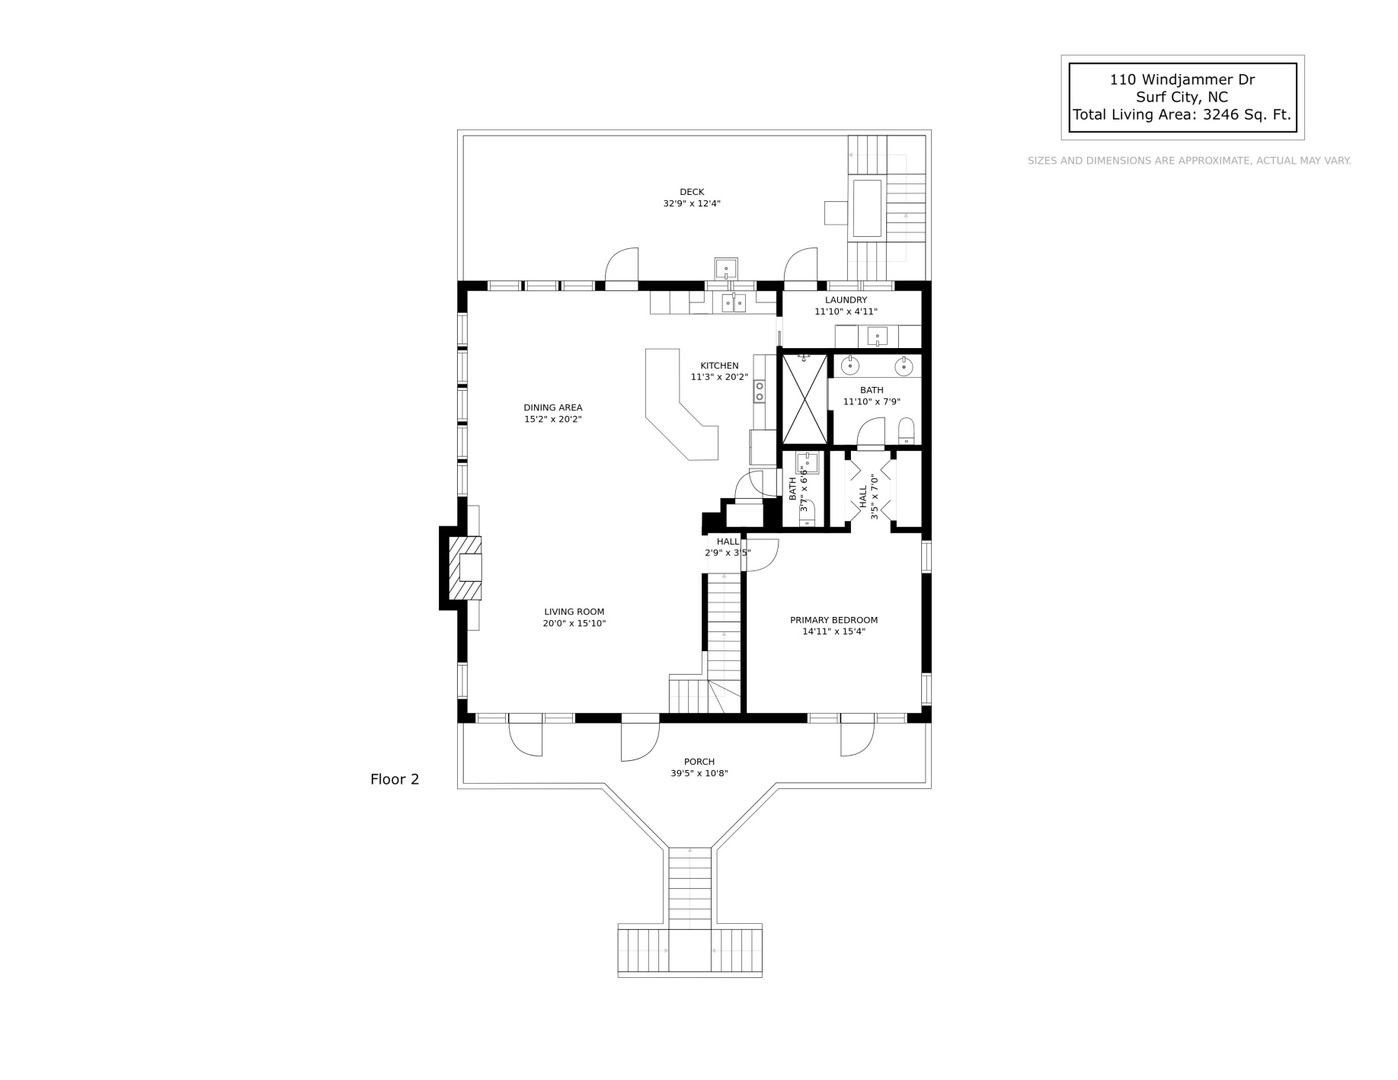 110 living level floor plan